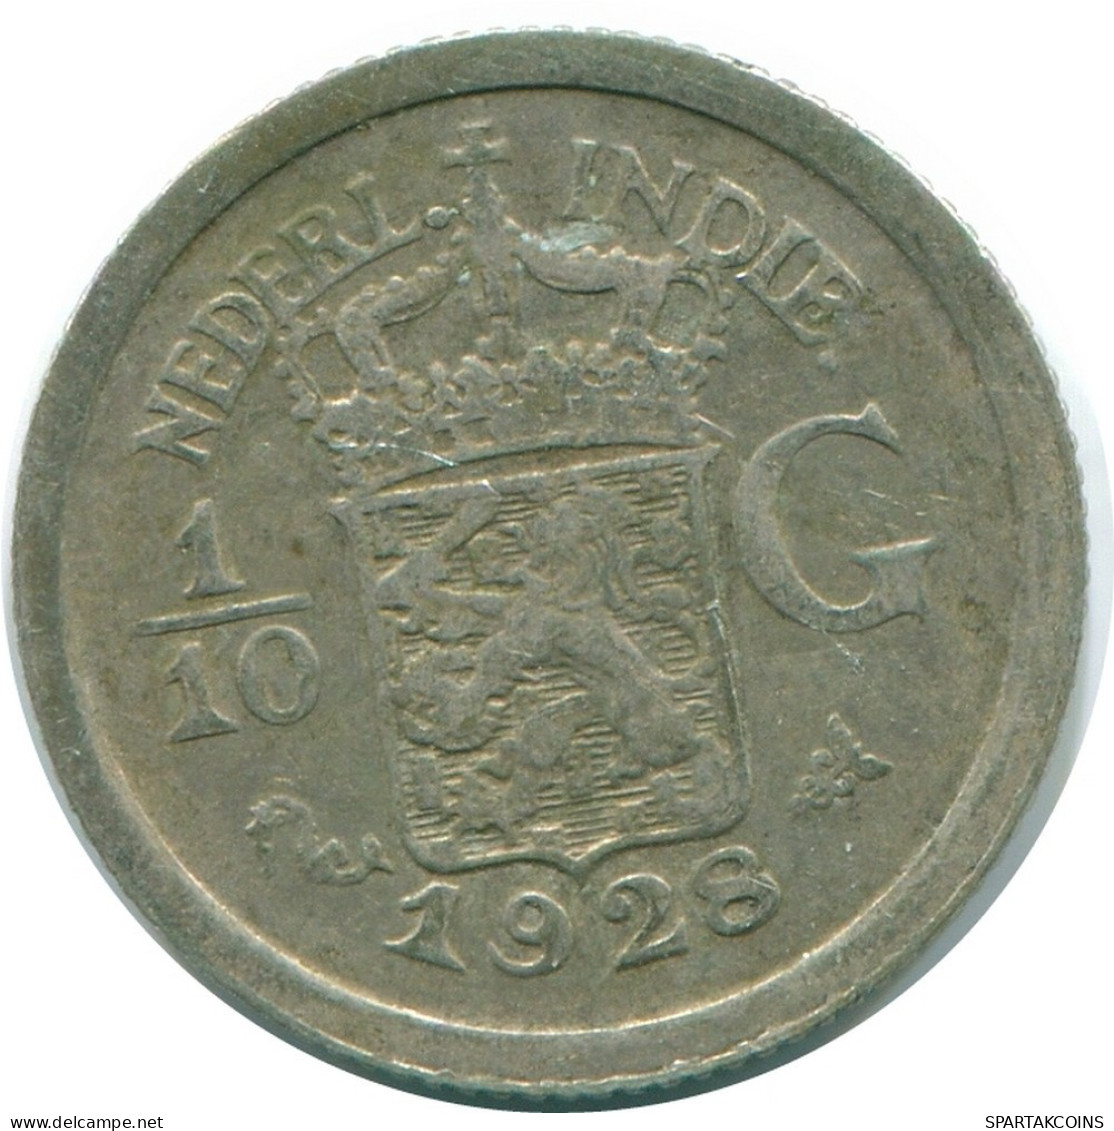 1/10 GULDEN 1928 NIEDERLANDE OSTINDIEN SILBER Koloniale Münze #NL13415.3.D.A - Indes Néerlandaises